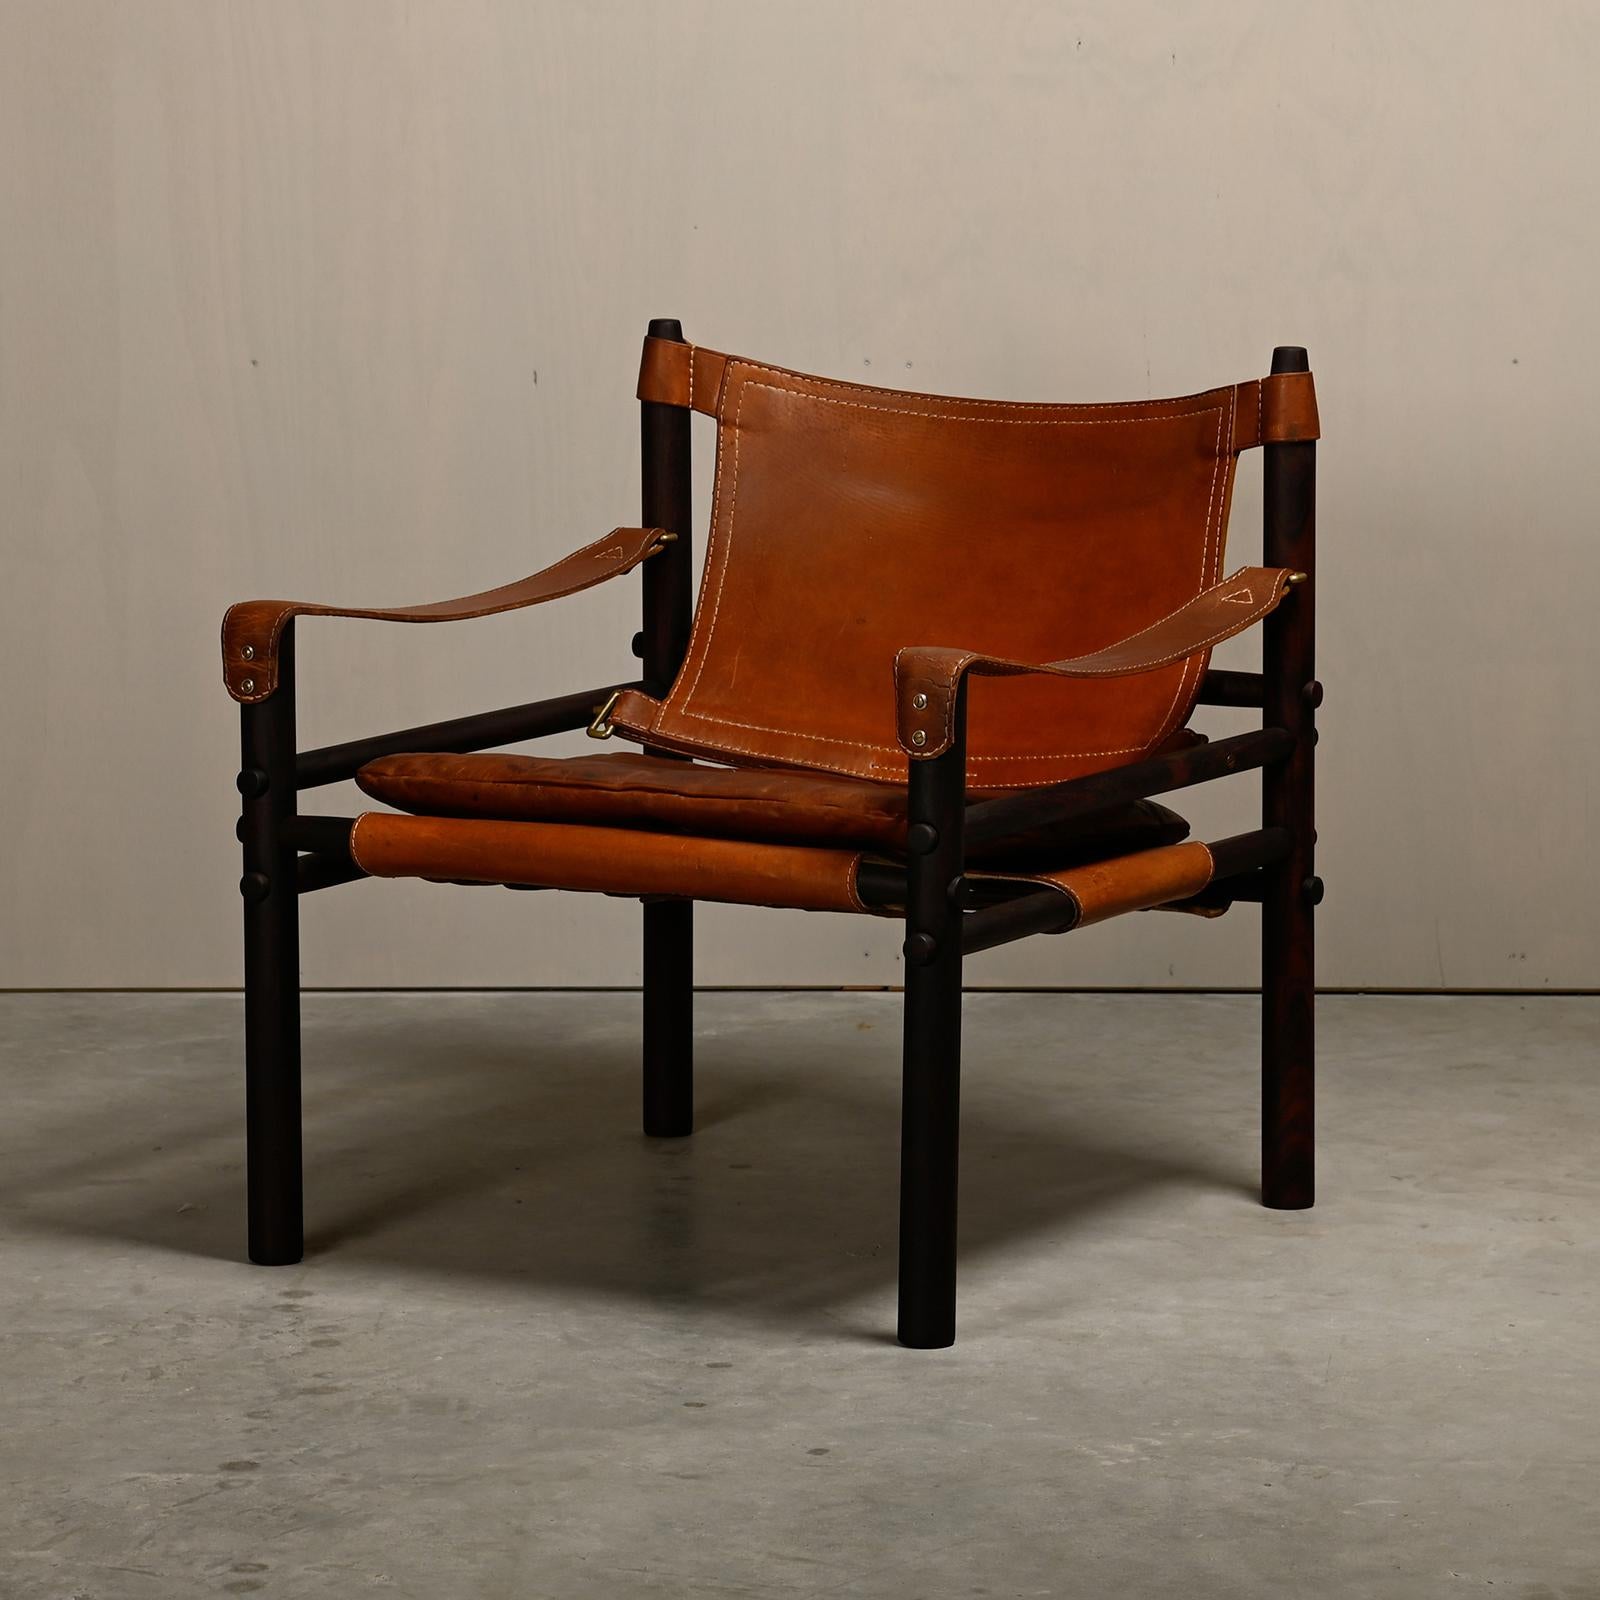 La chaise longue Sirocco Safari a été conçue par Arne Norell et fabriquée par Norell Möbel AB en Suède. Cadre en palissandre brun foncé remis à neuf avec les coussins en cuir d'origine en beau cuir brun vieilli. Le tout en bon état vintage.